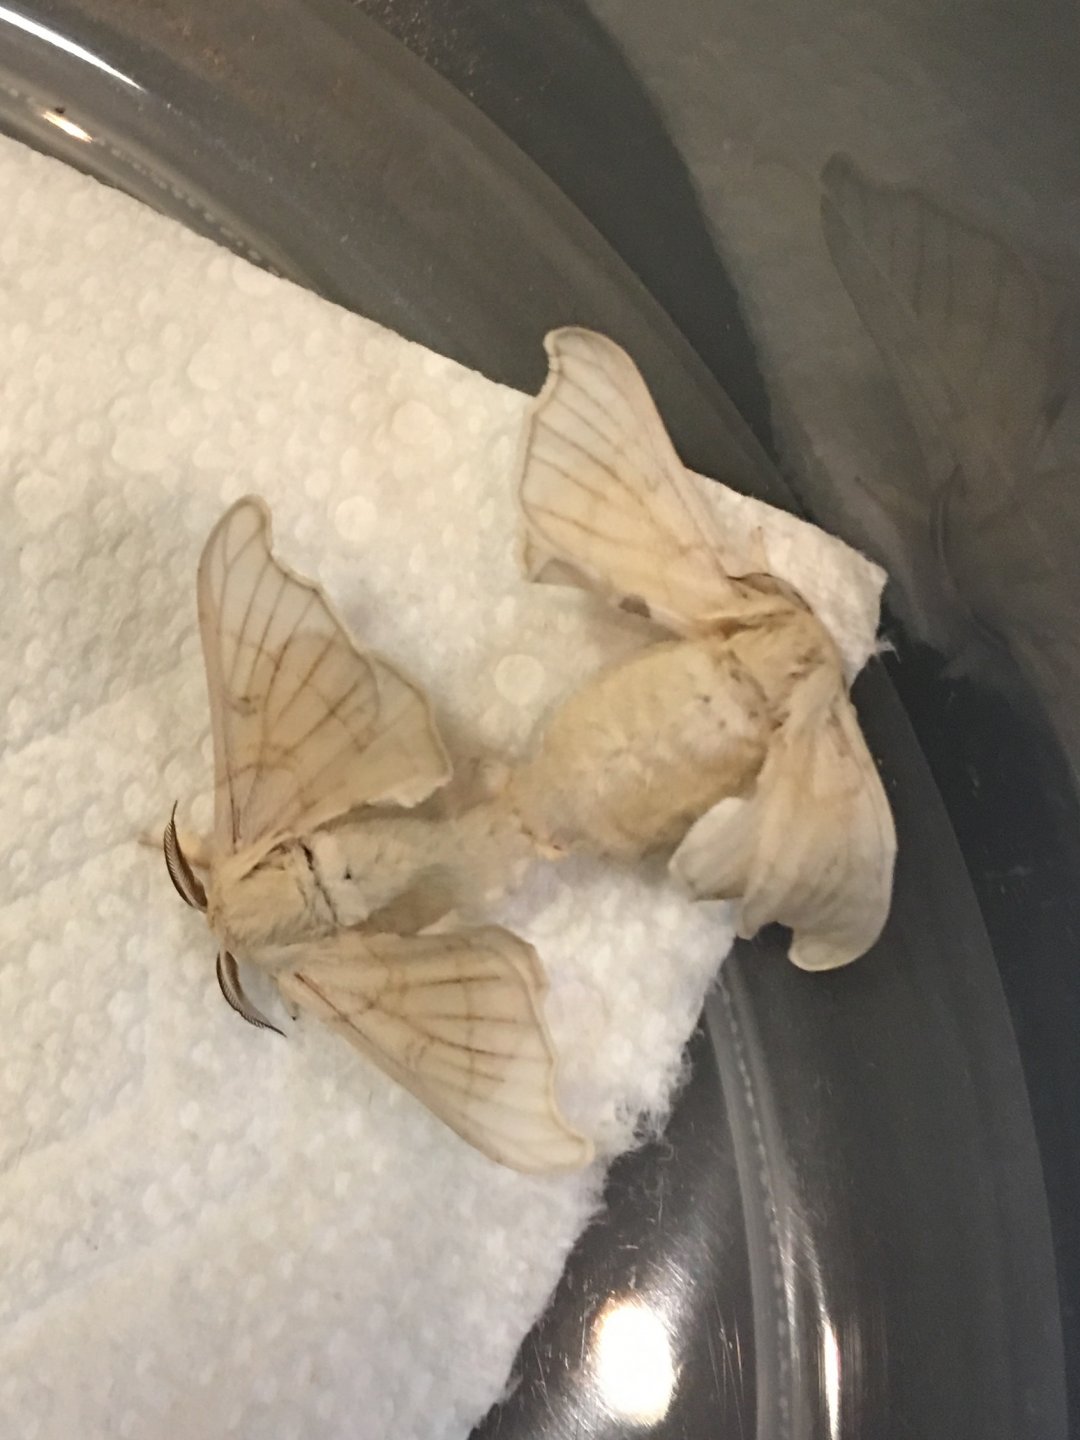 Mating Silkworm Moths